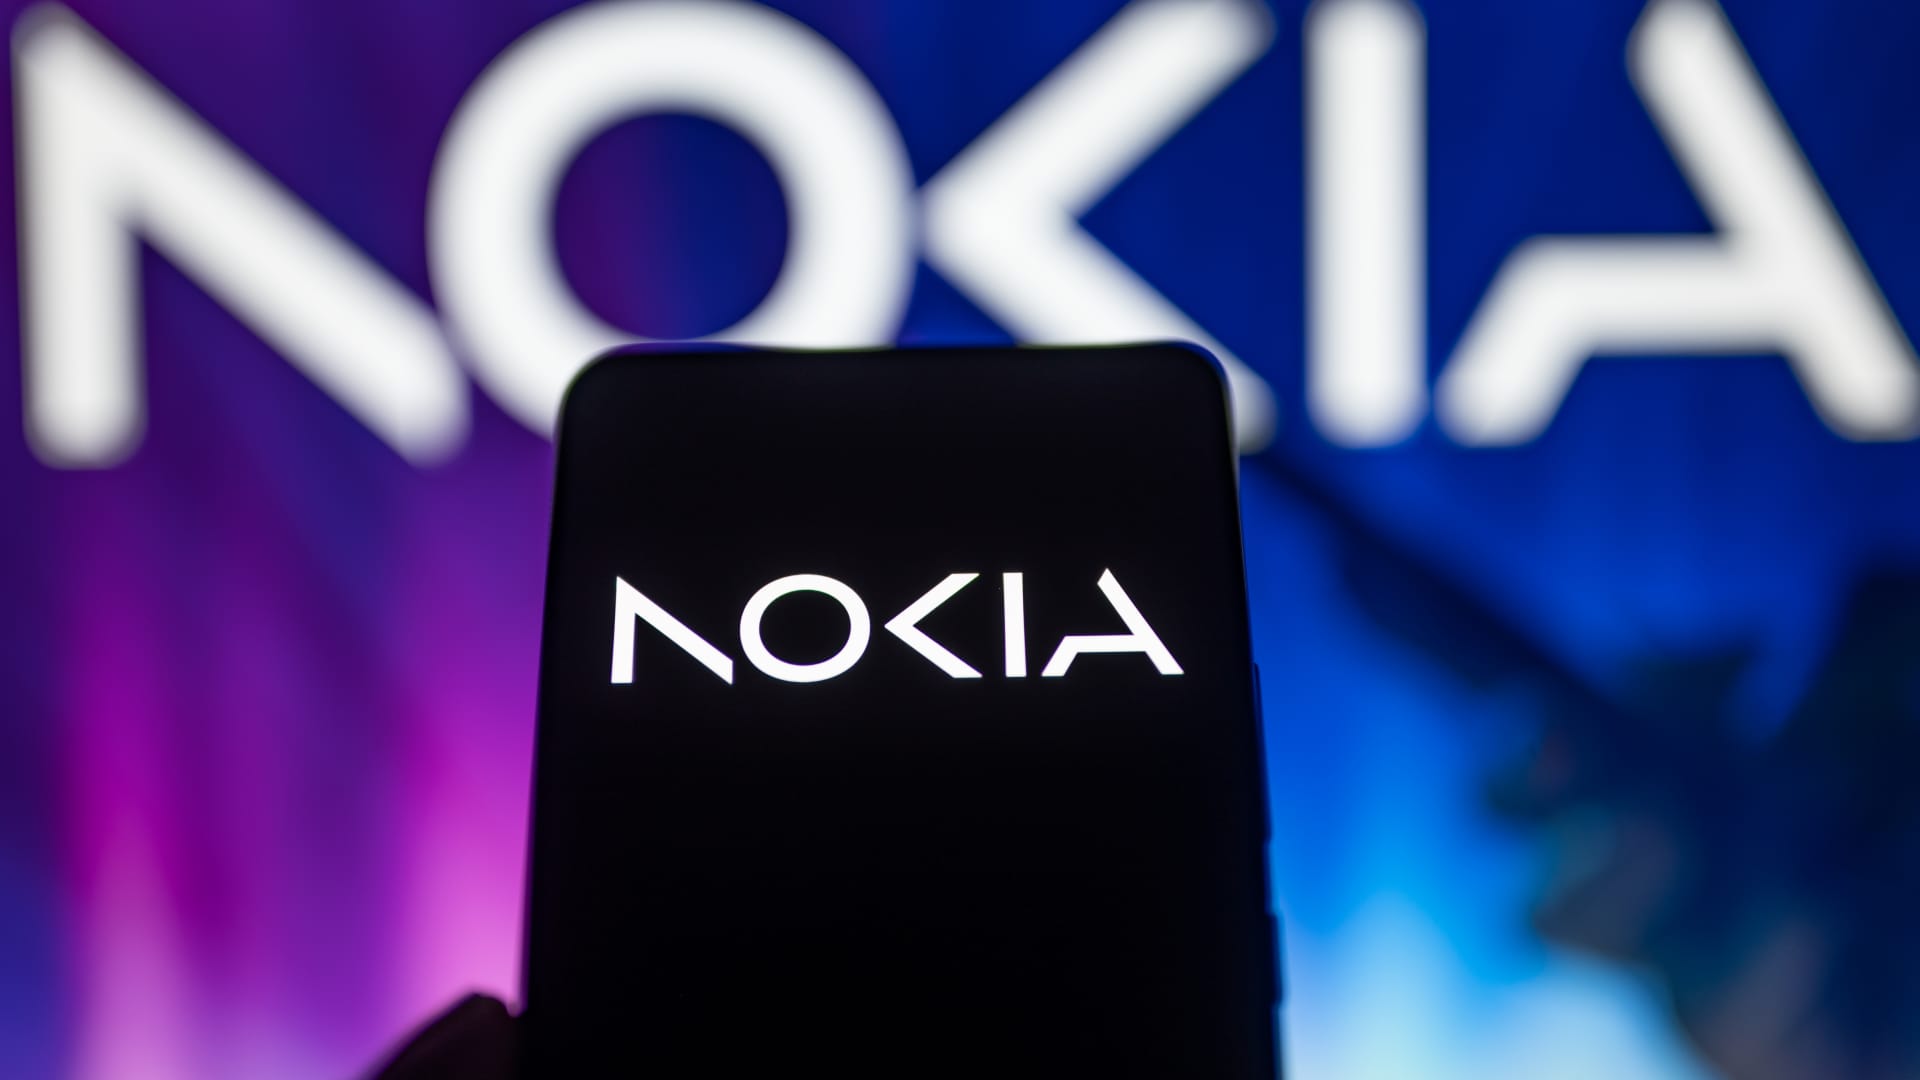 Nokia berniat menghilangkan hingga 14 ribu pekerjaan setelah keuntungannya menurun